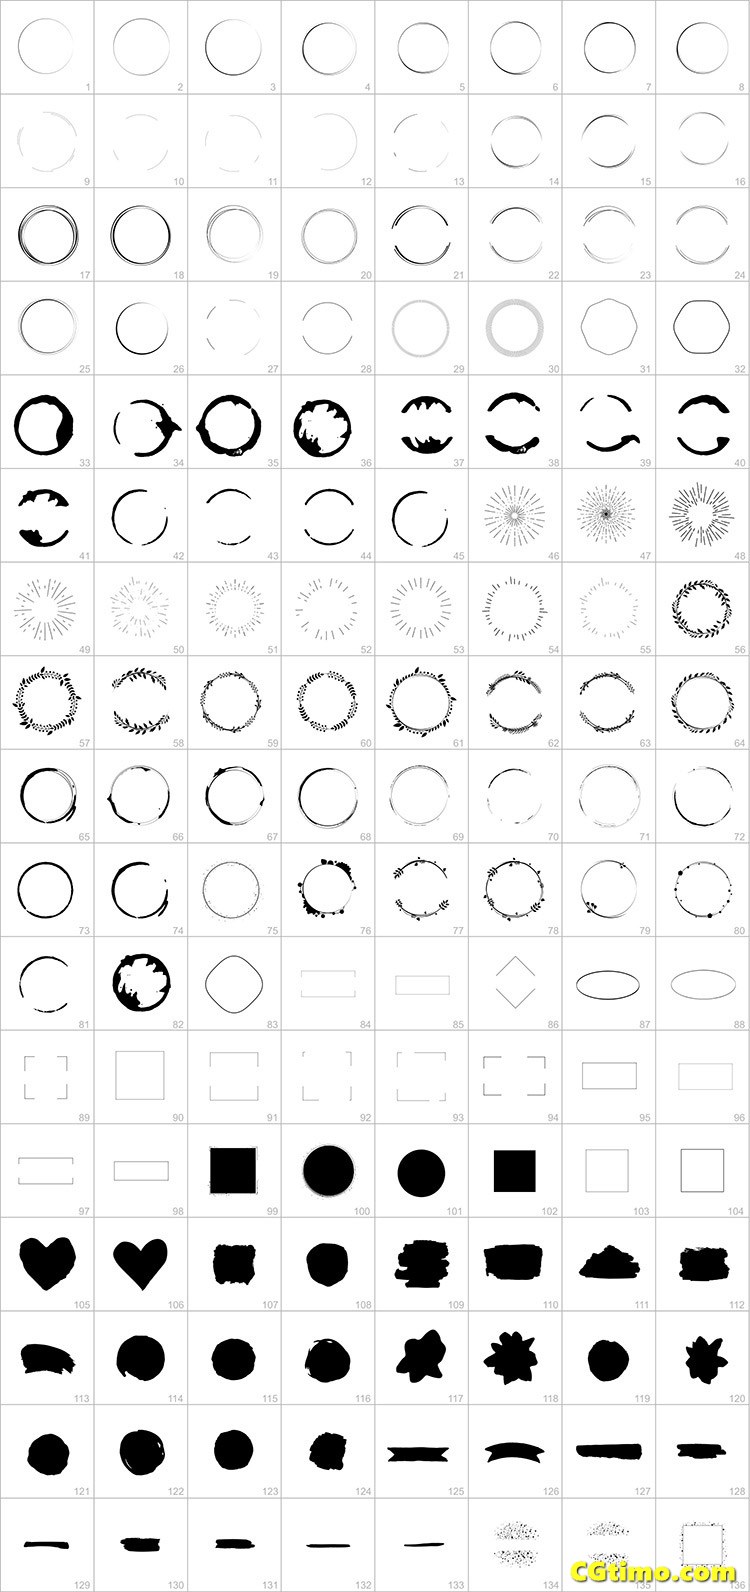 字体-100款精选英文字体LOGO含字体贴图（内容一键替换） 矢量素材 第3张